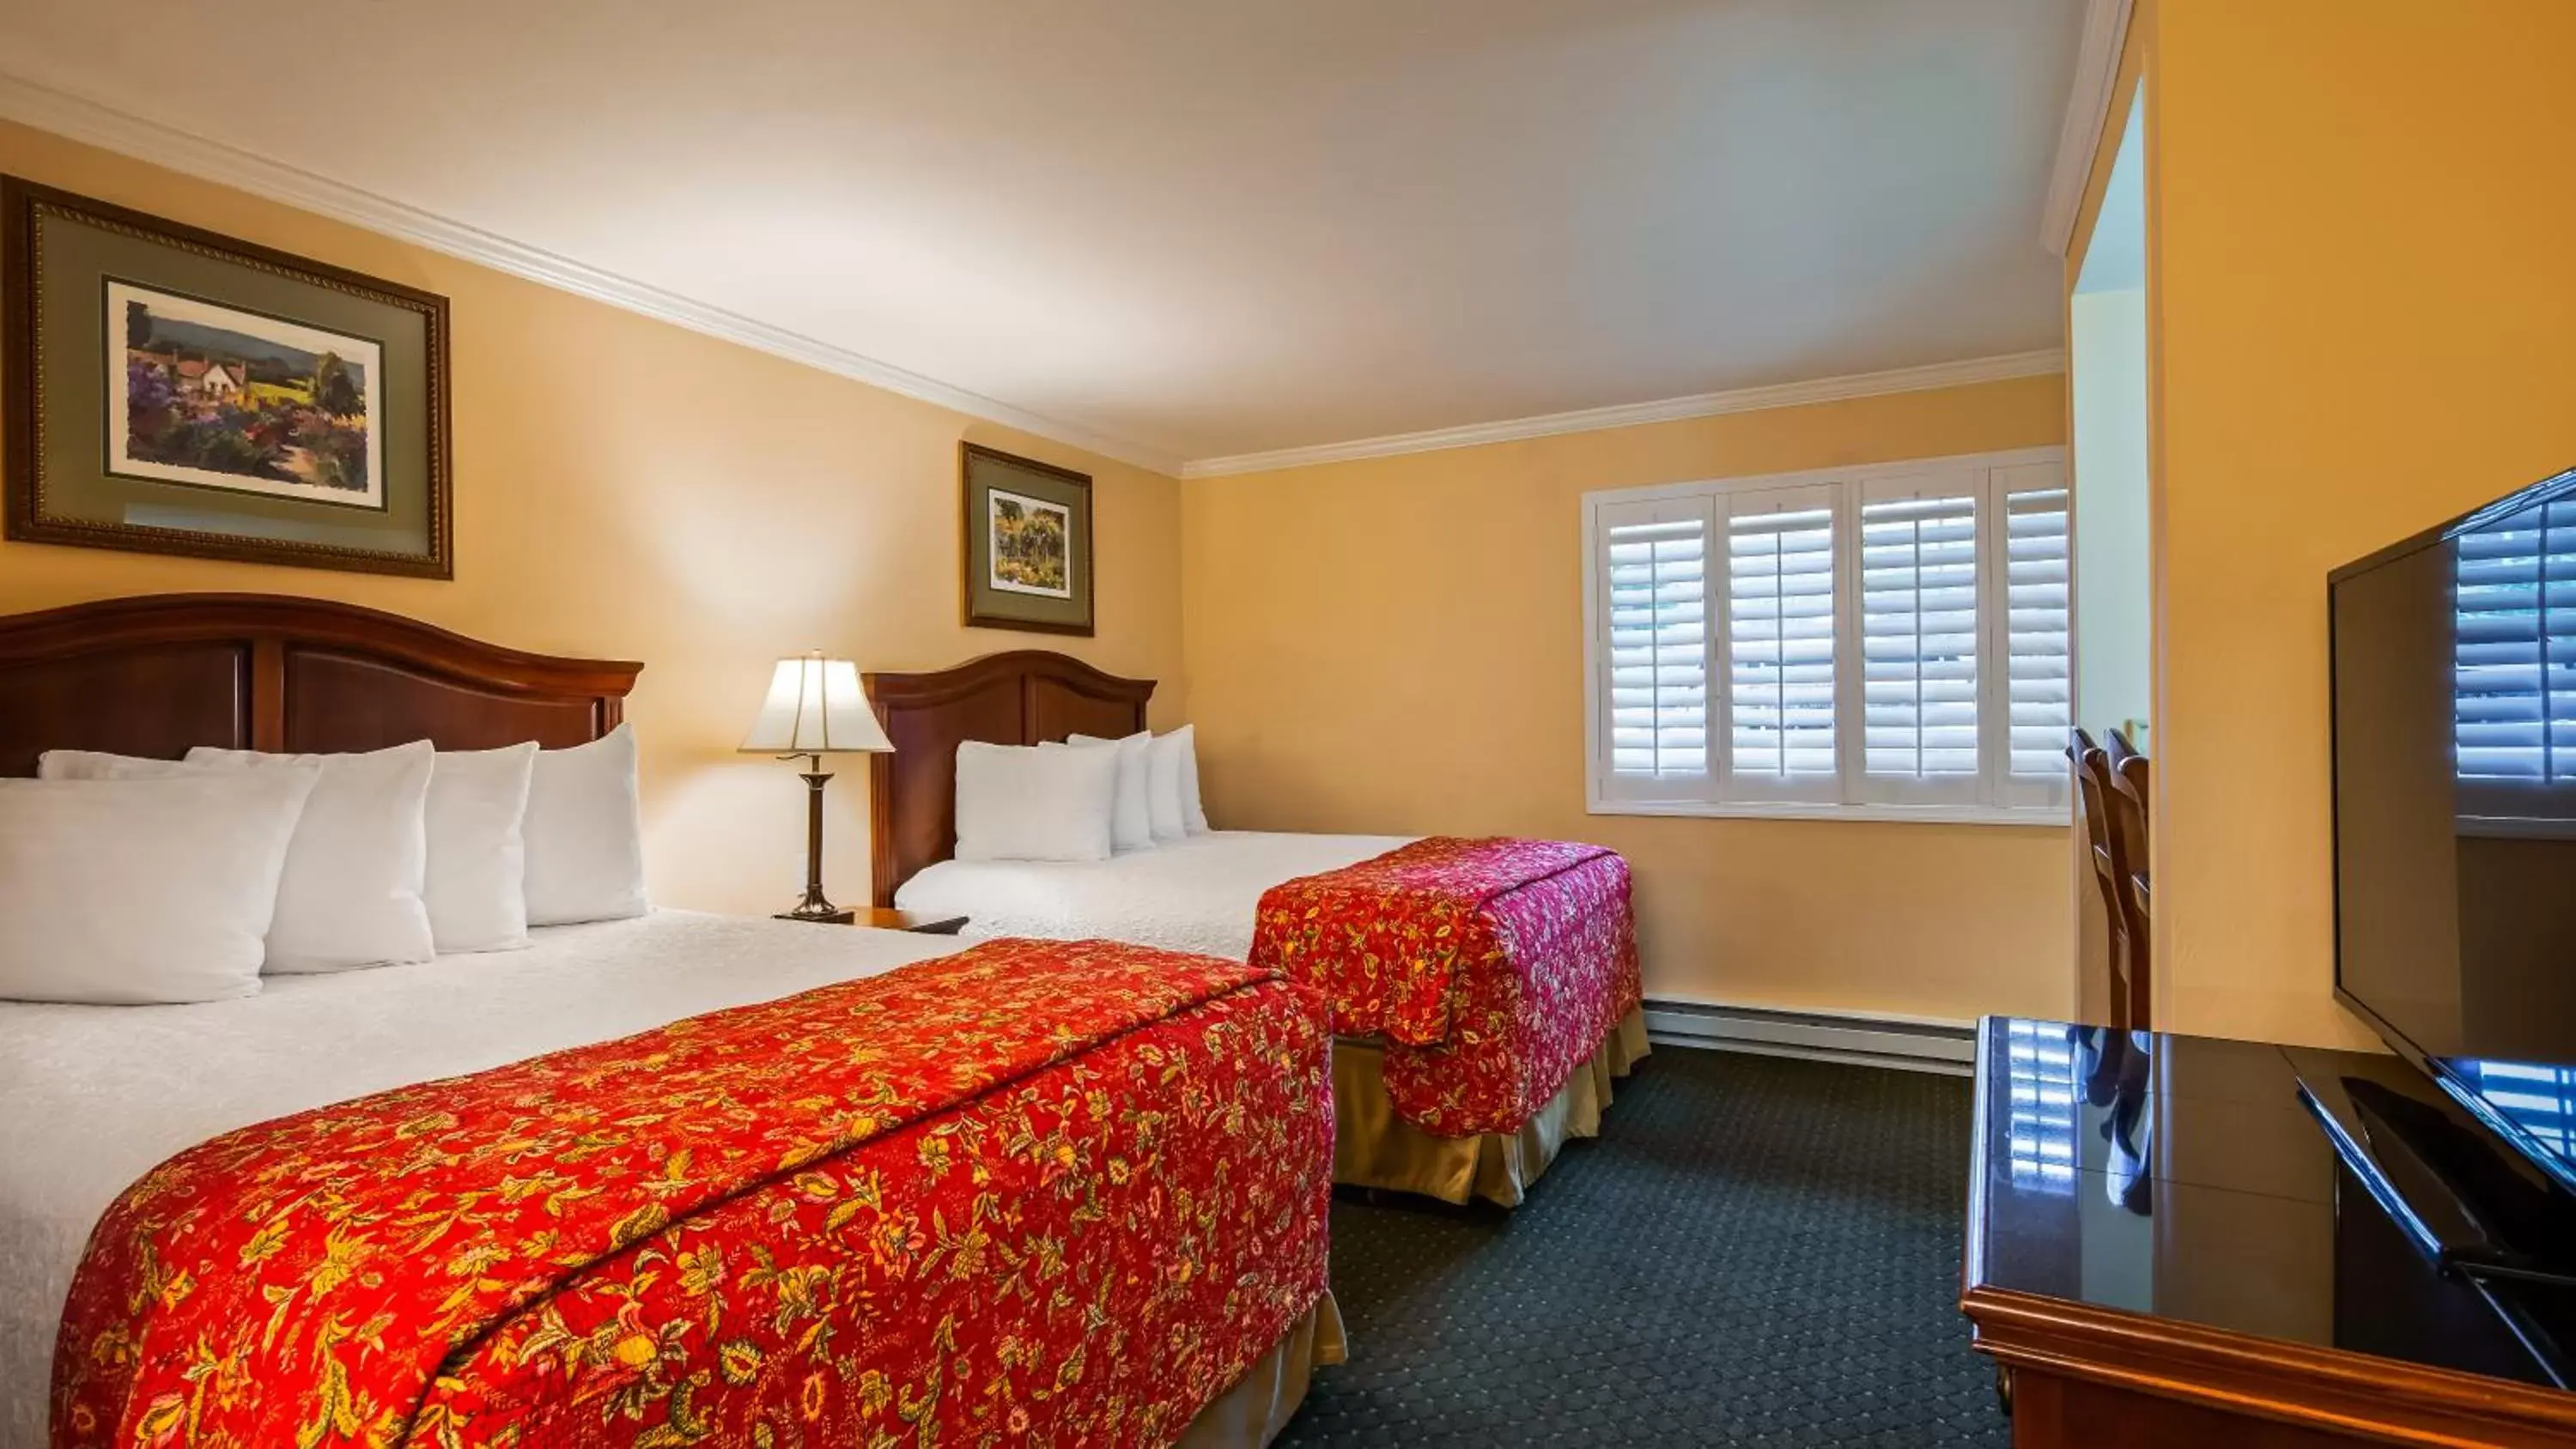 Bedroom, Bed in Best Western Country Lane Inn